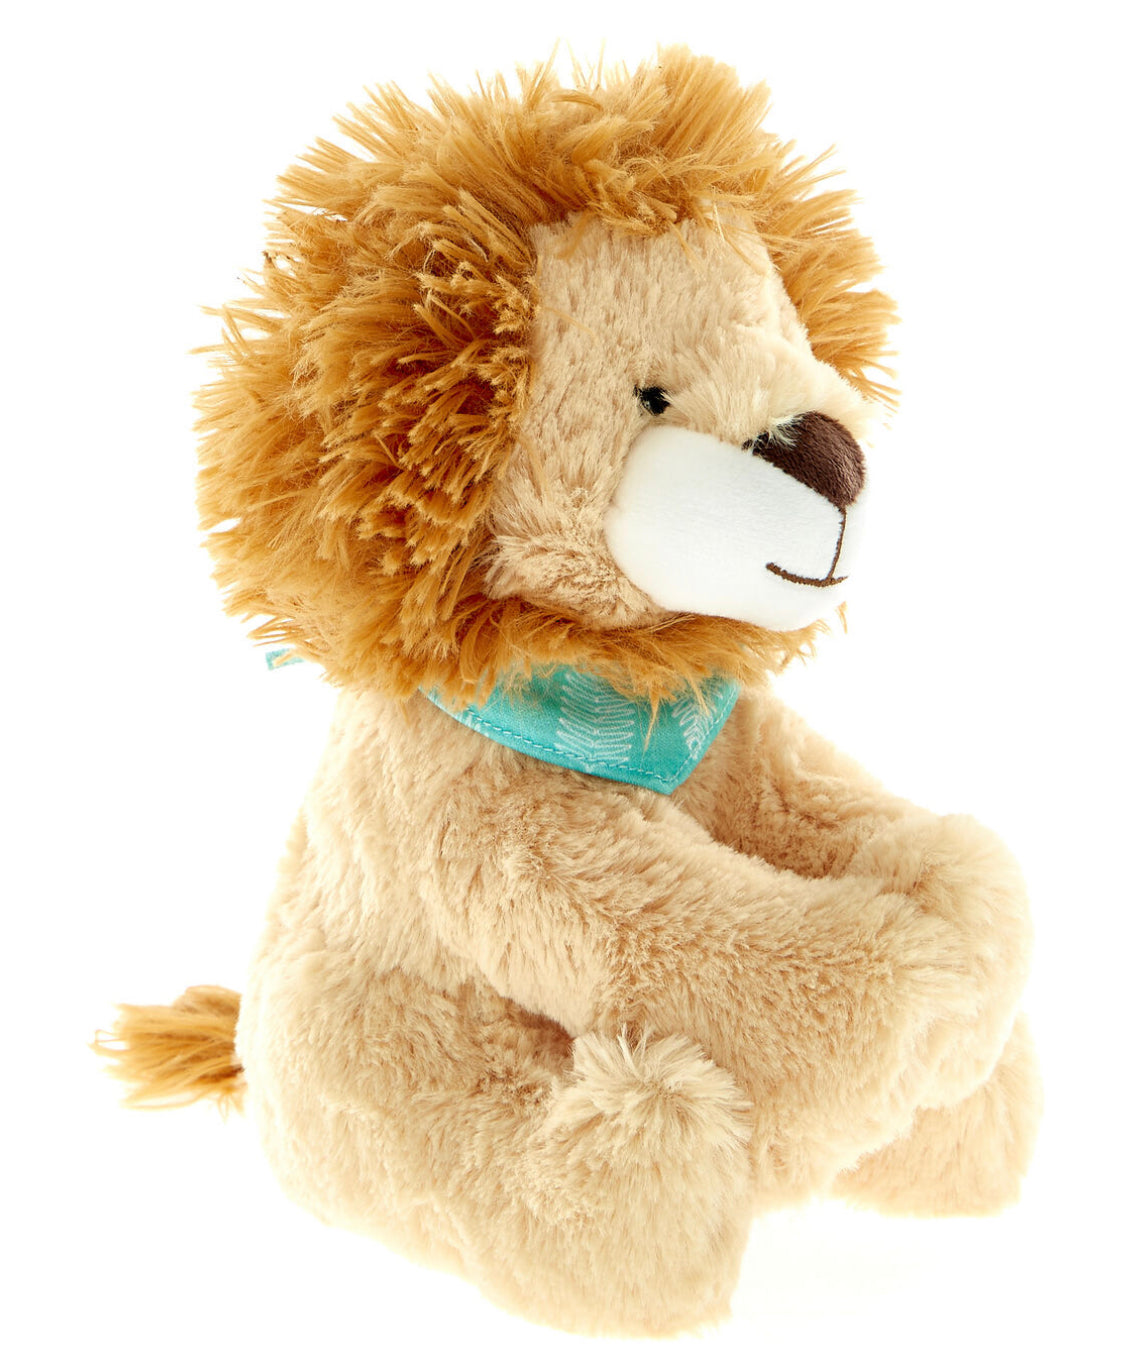 Lion Soft Plush